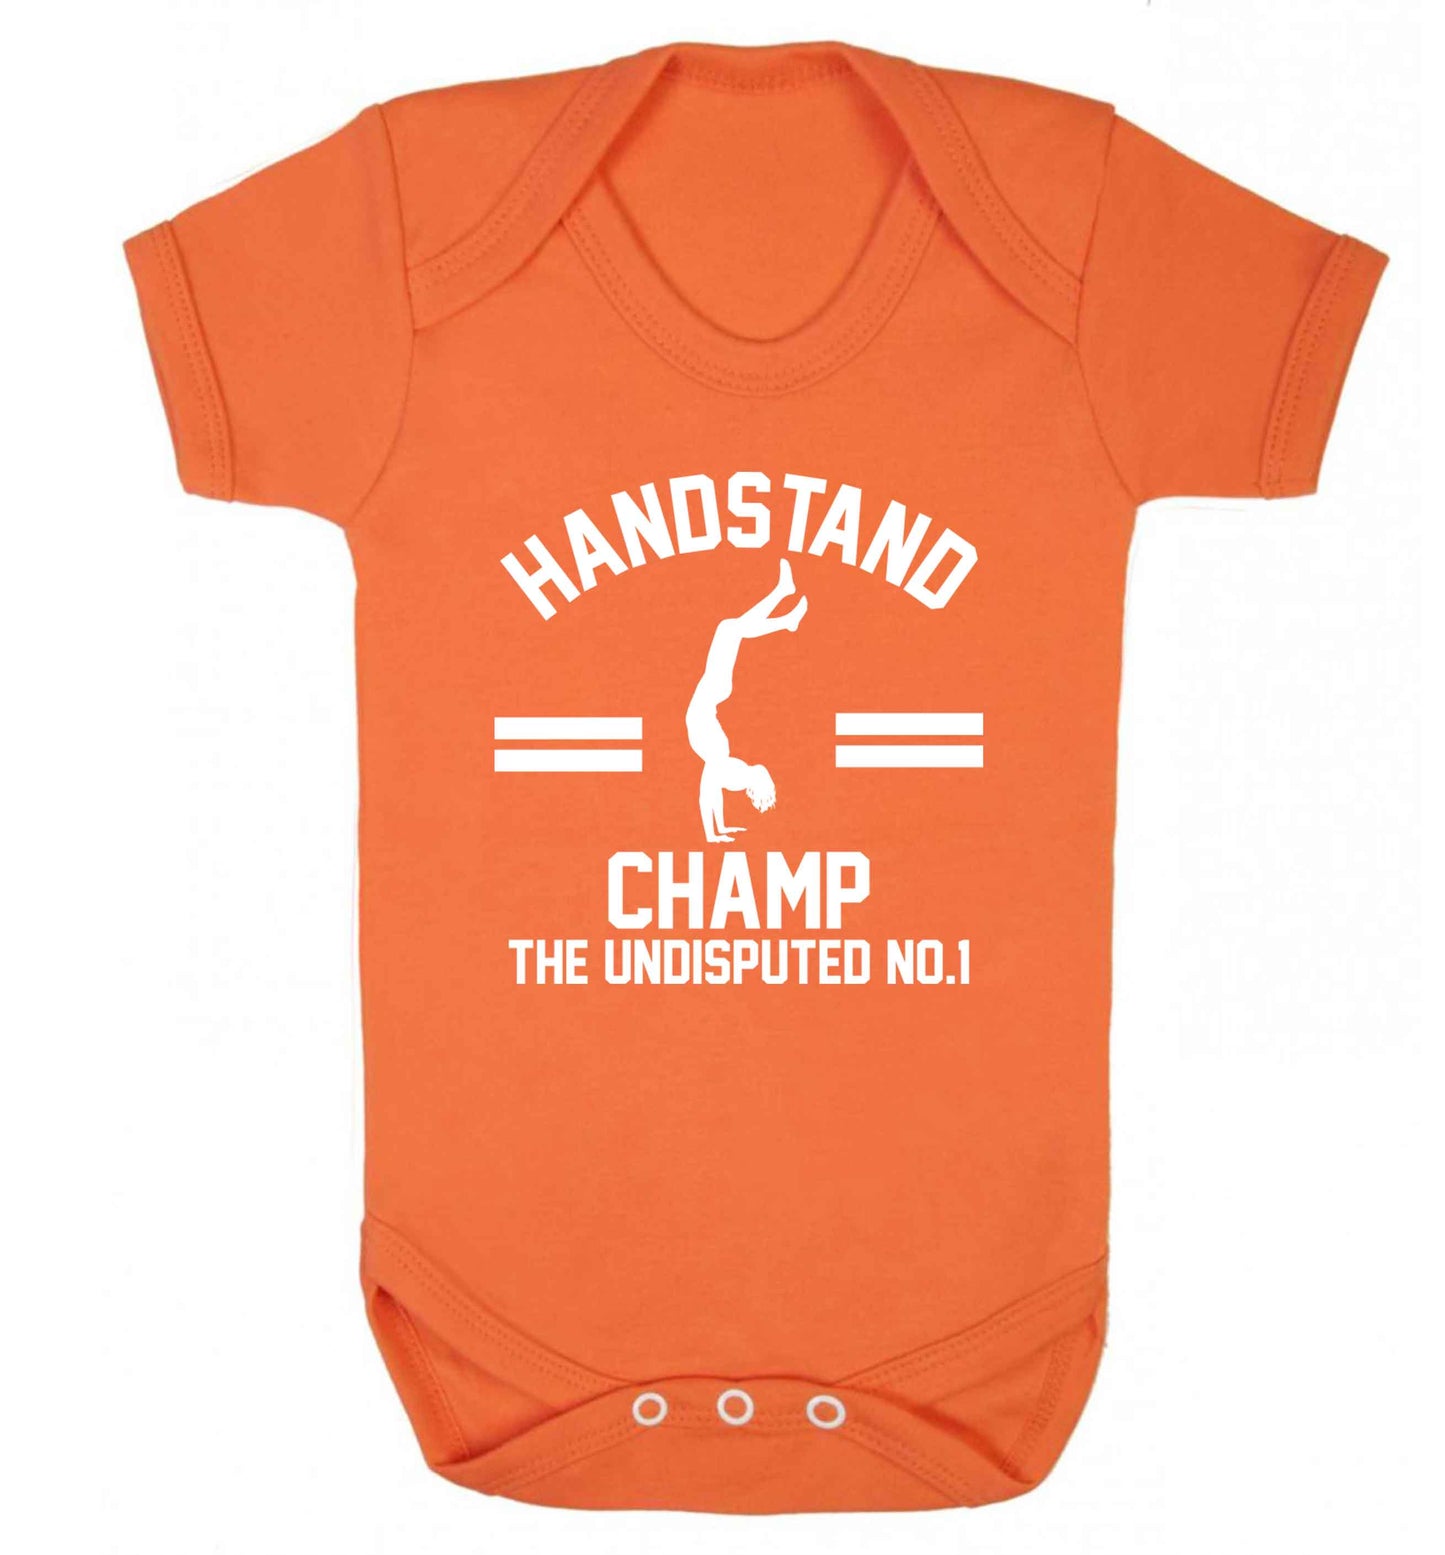 Undisputed handstand championship no.1  Baby Vest orange 18-24 months